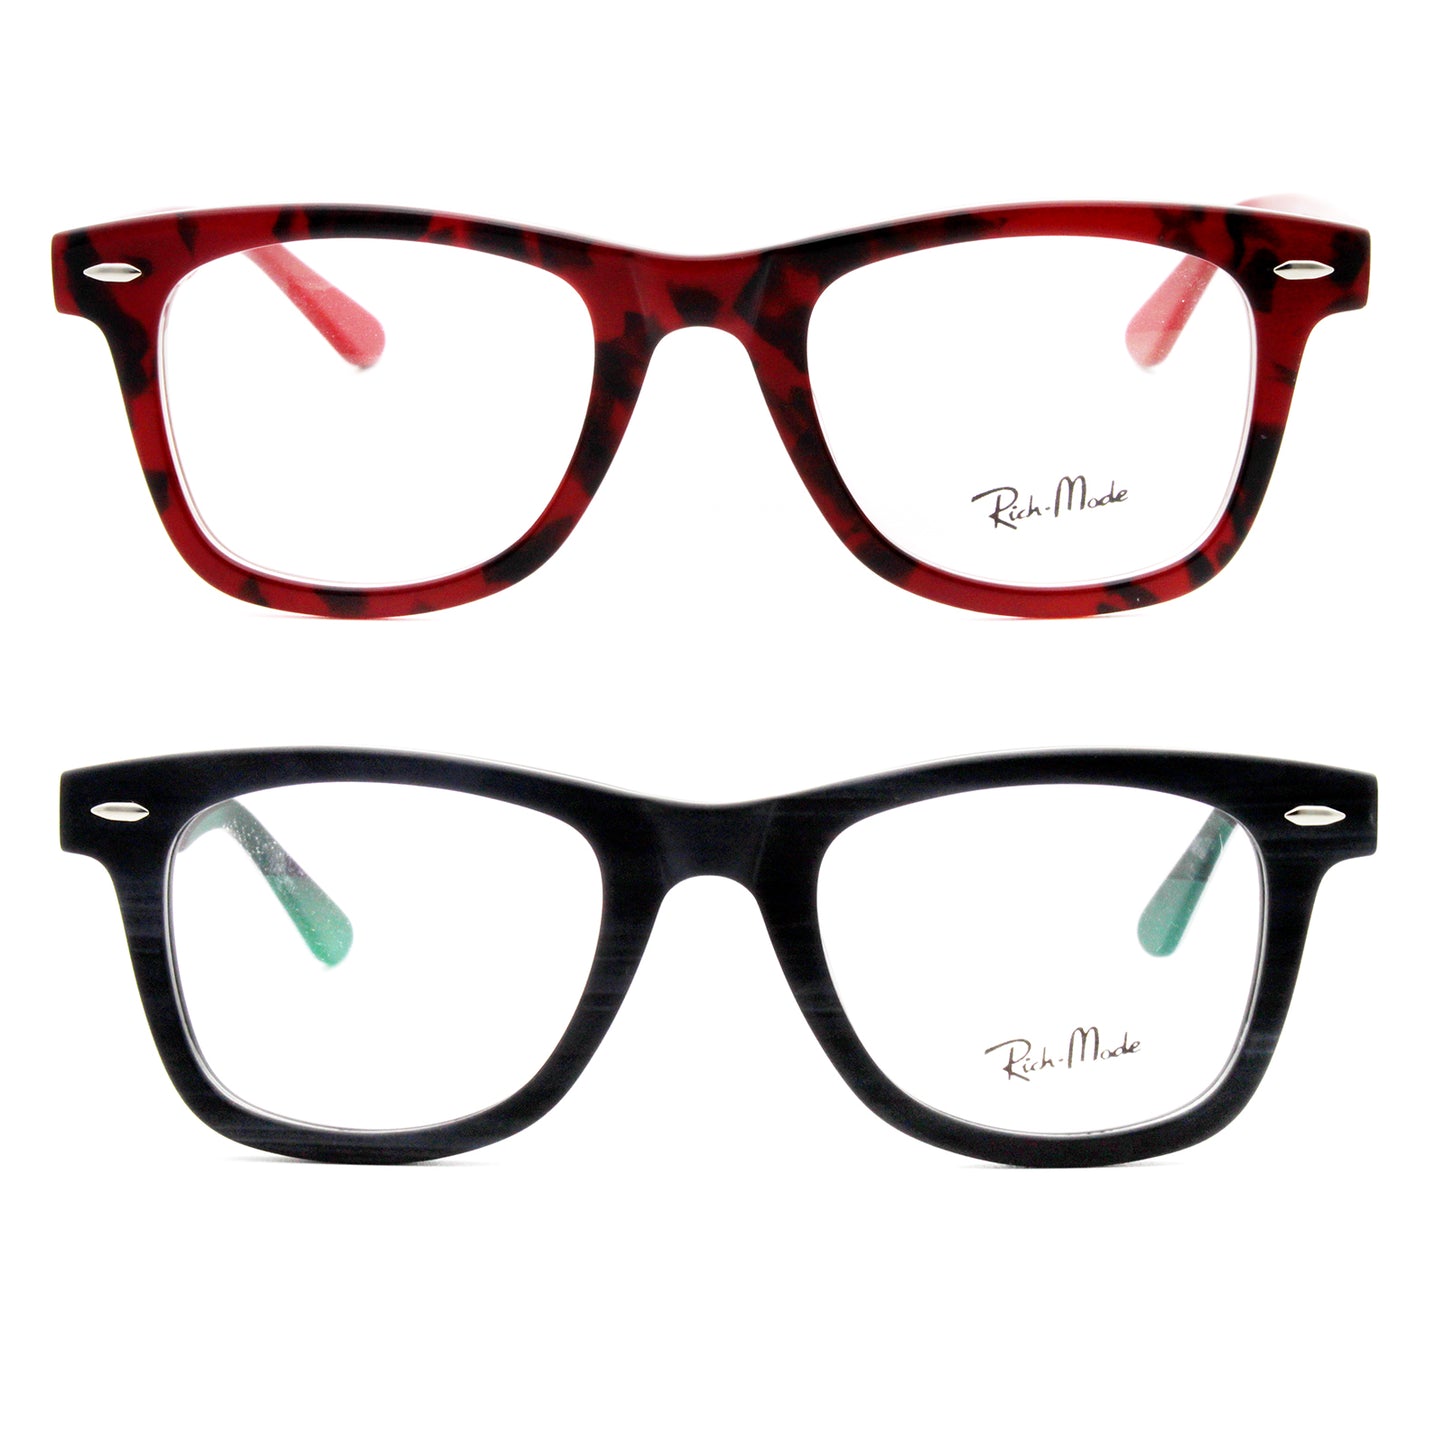 604G-S/H Eyeglasses Frame